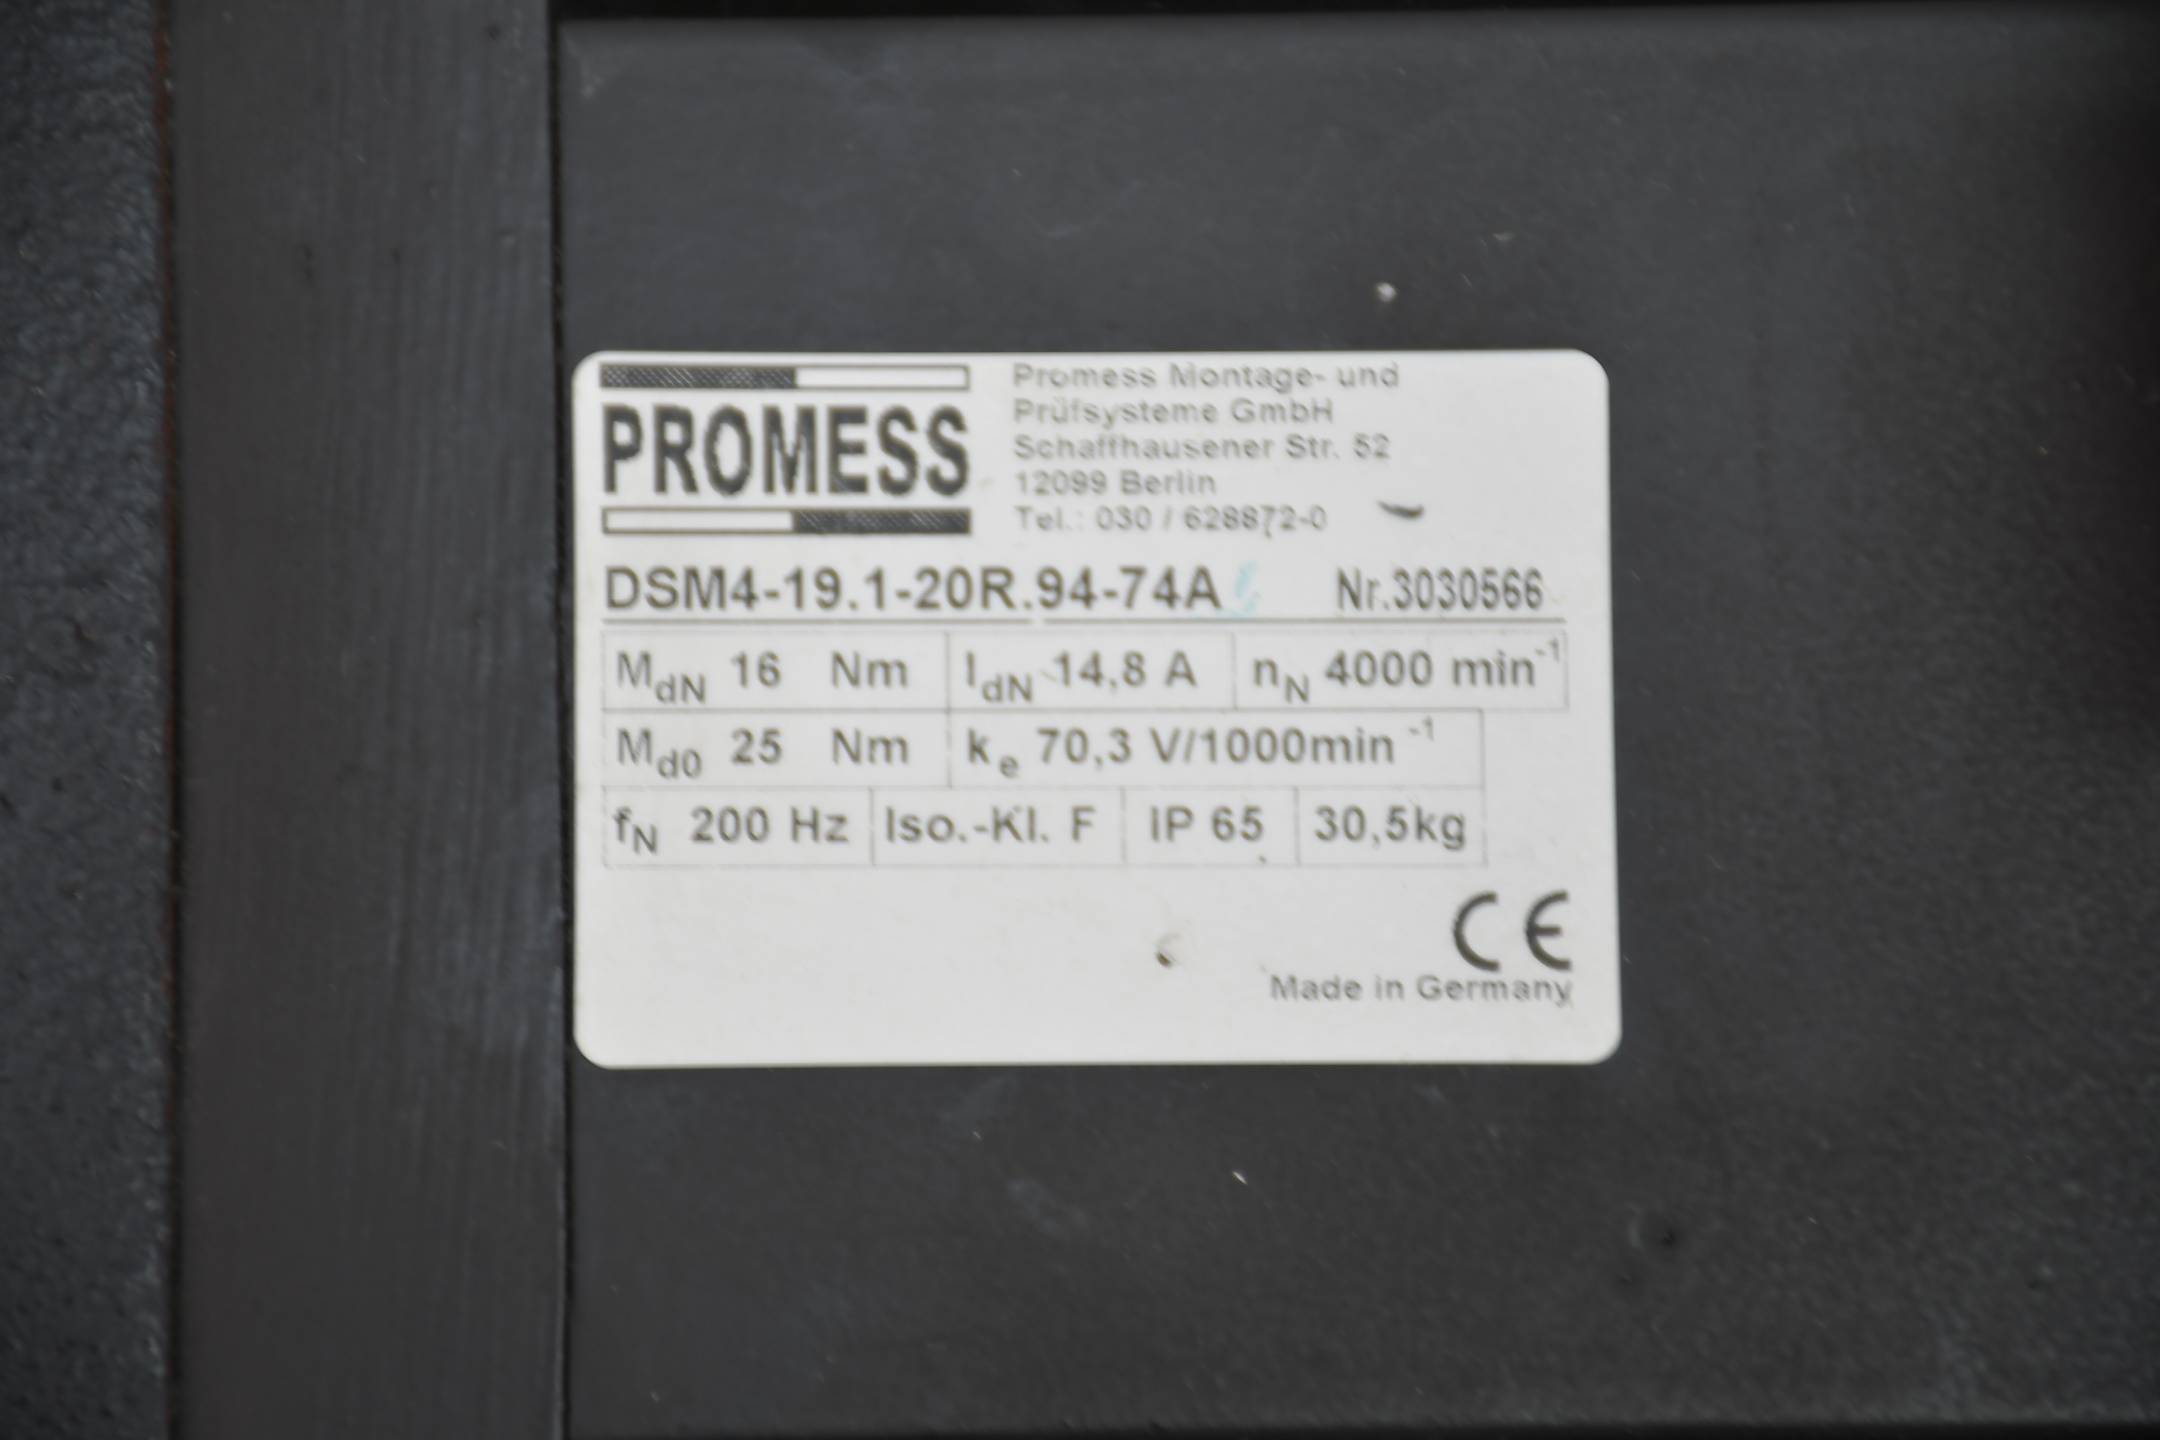 Promess DSM4-19.1-20R.94-74A Inkl. MPS1